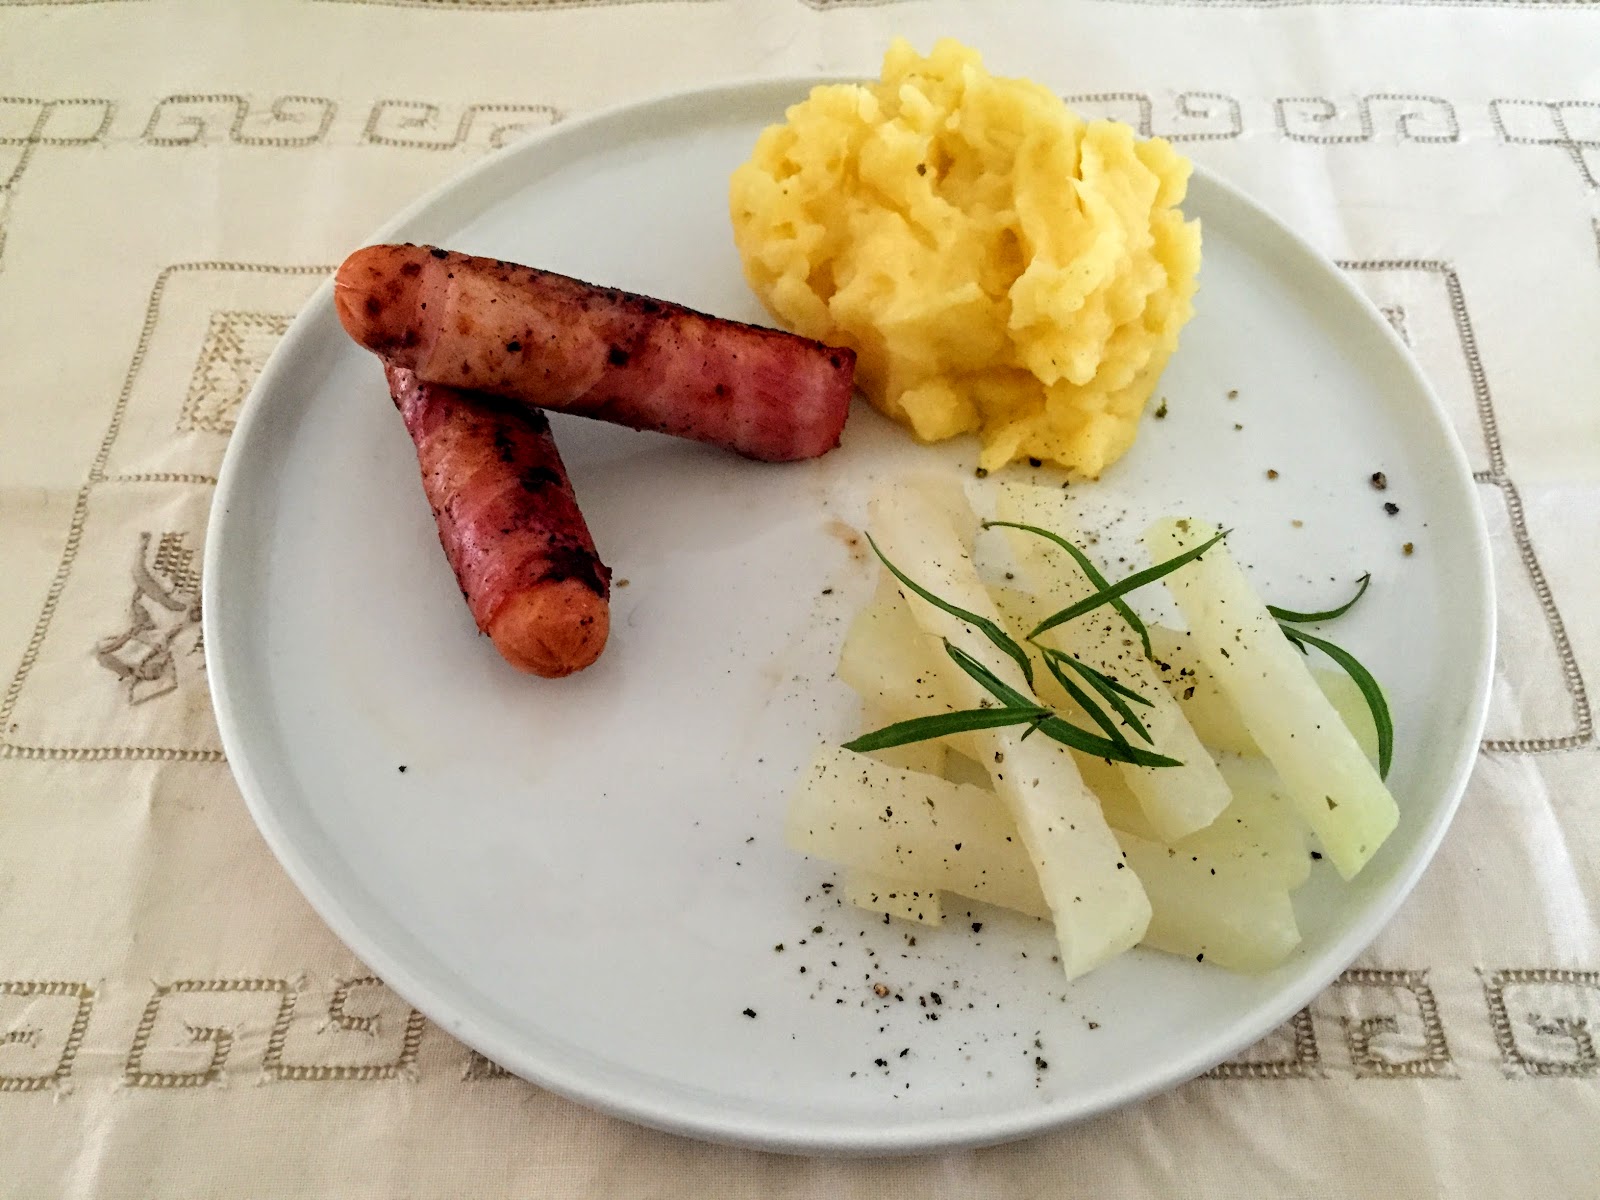 Das Auge isst mit!: 11. Juli 2016: Berner Würstel, Kartoffelbrei und ...